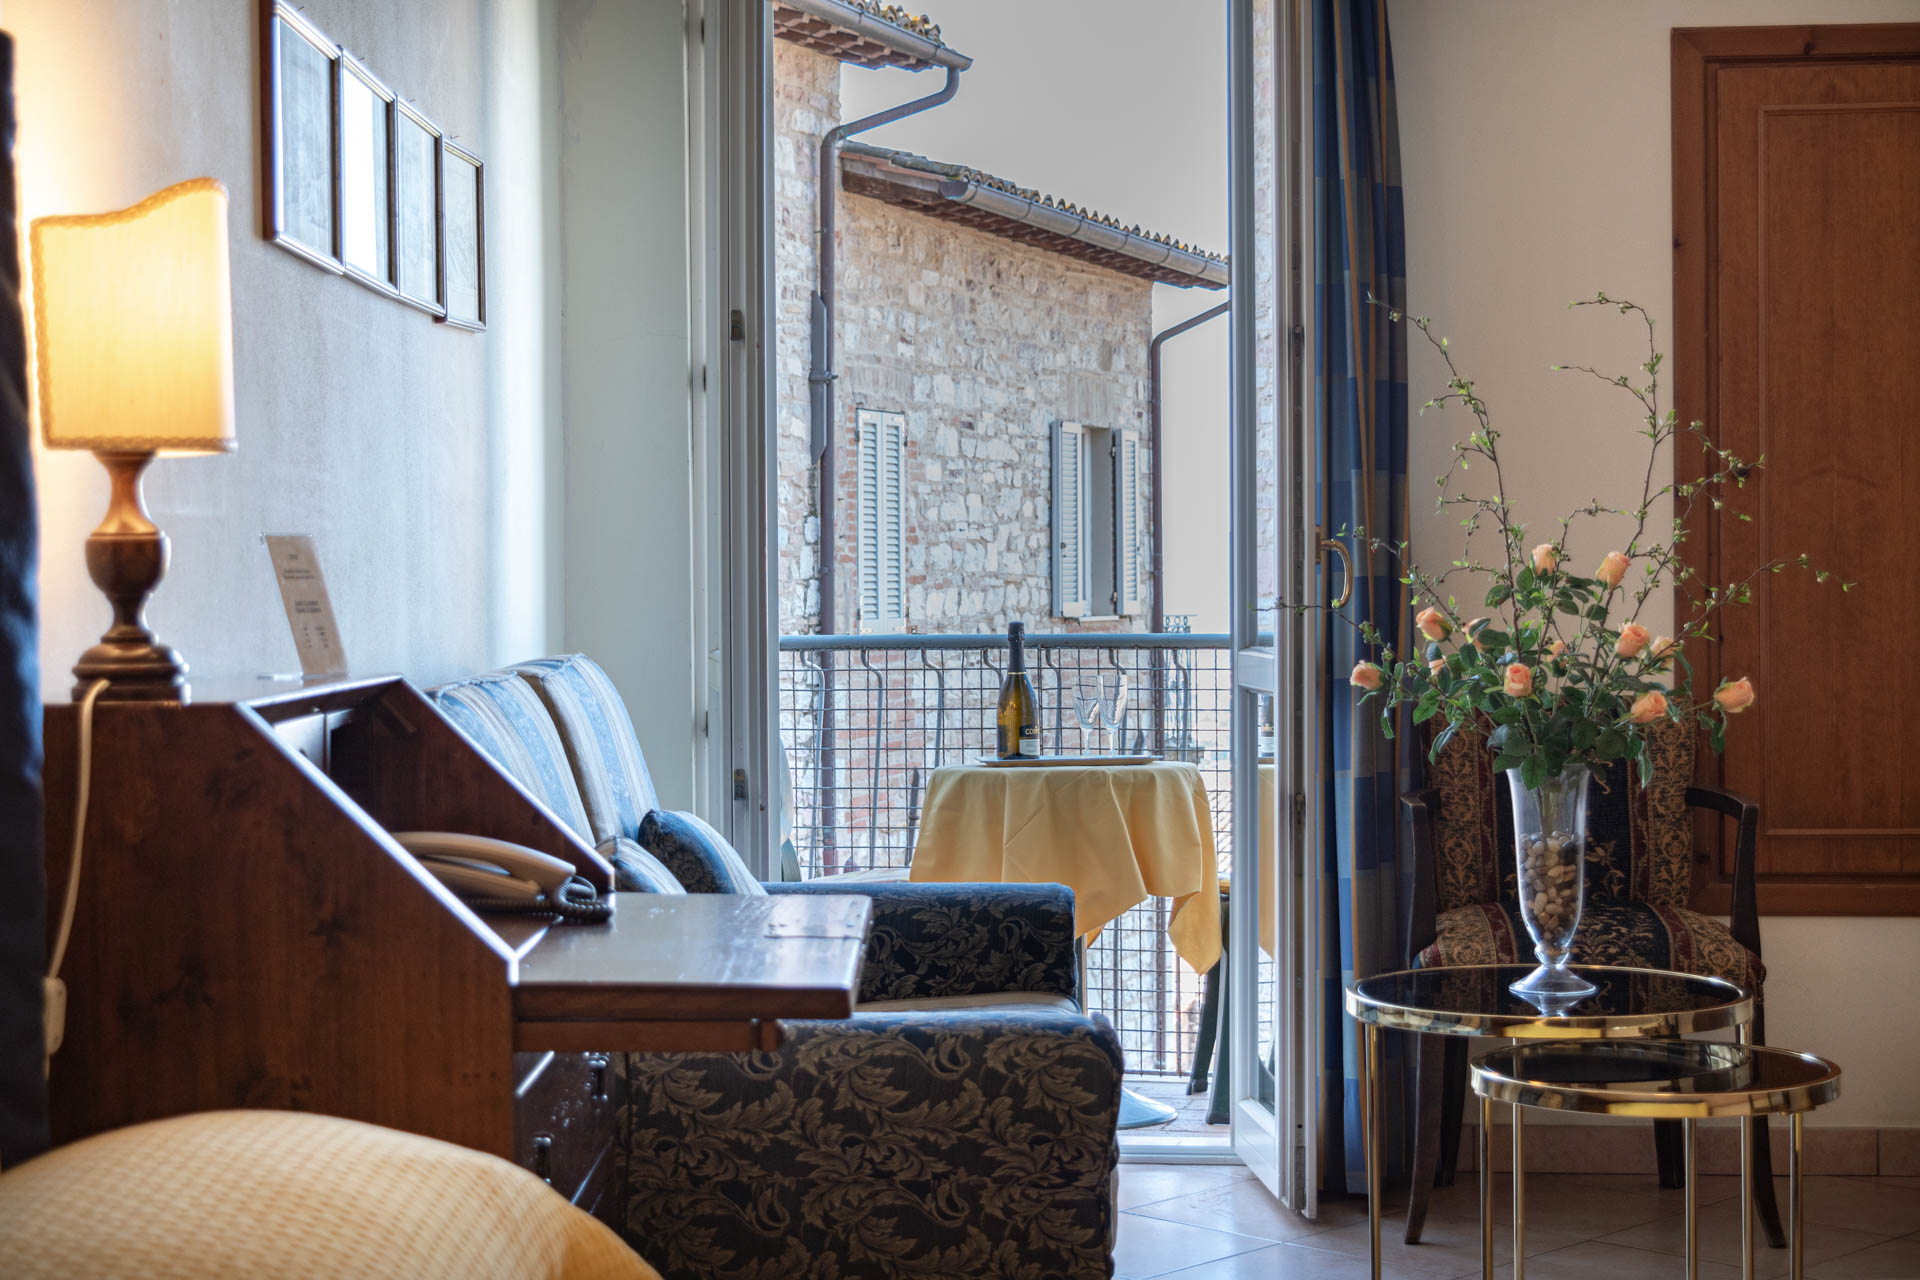 Camera doppia standard - Panoramica della stanza | Hotel Umbra tre stelle nel centro storico di Assisi